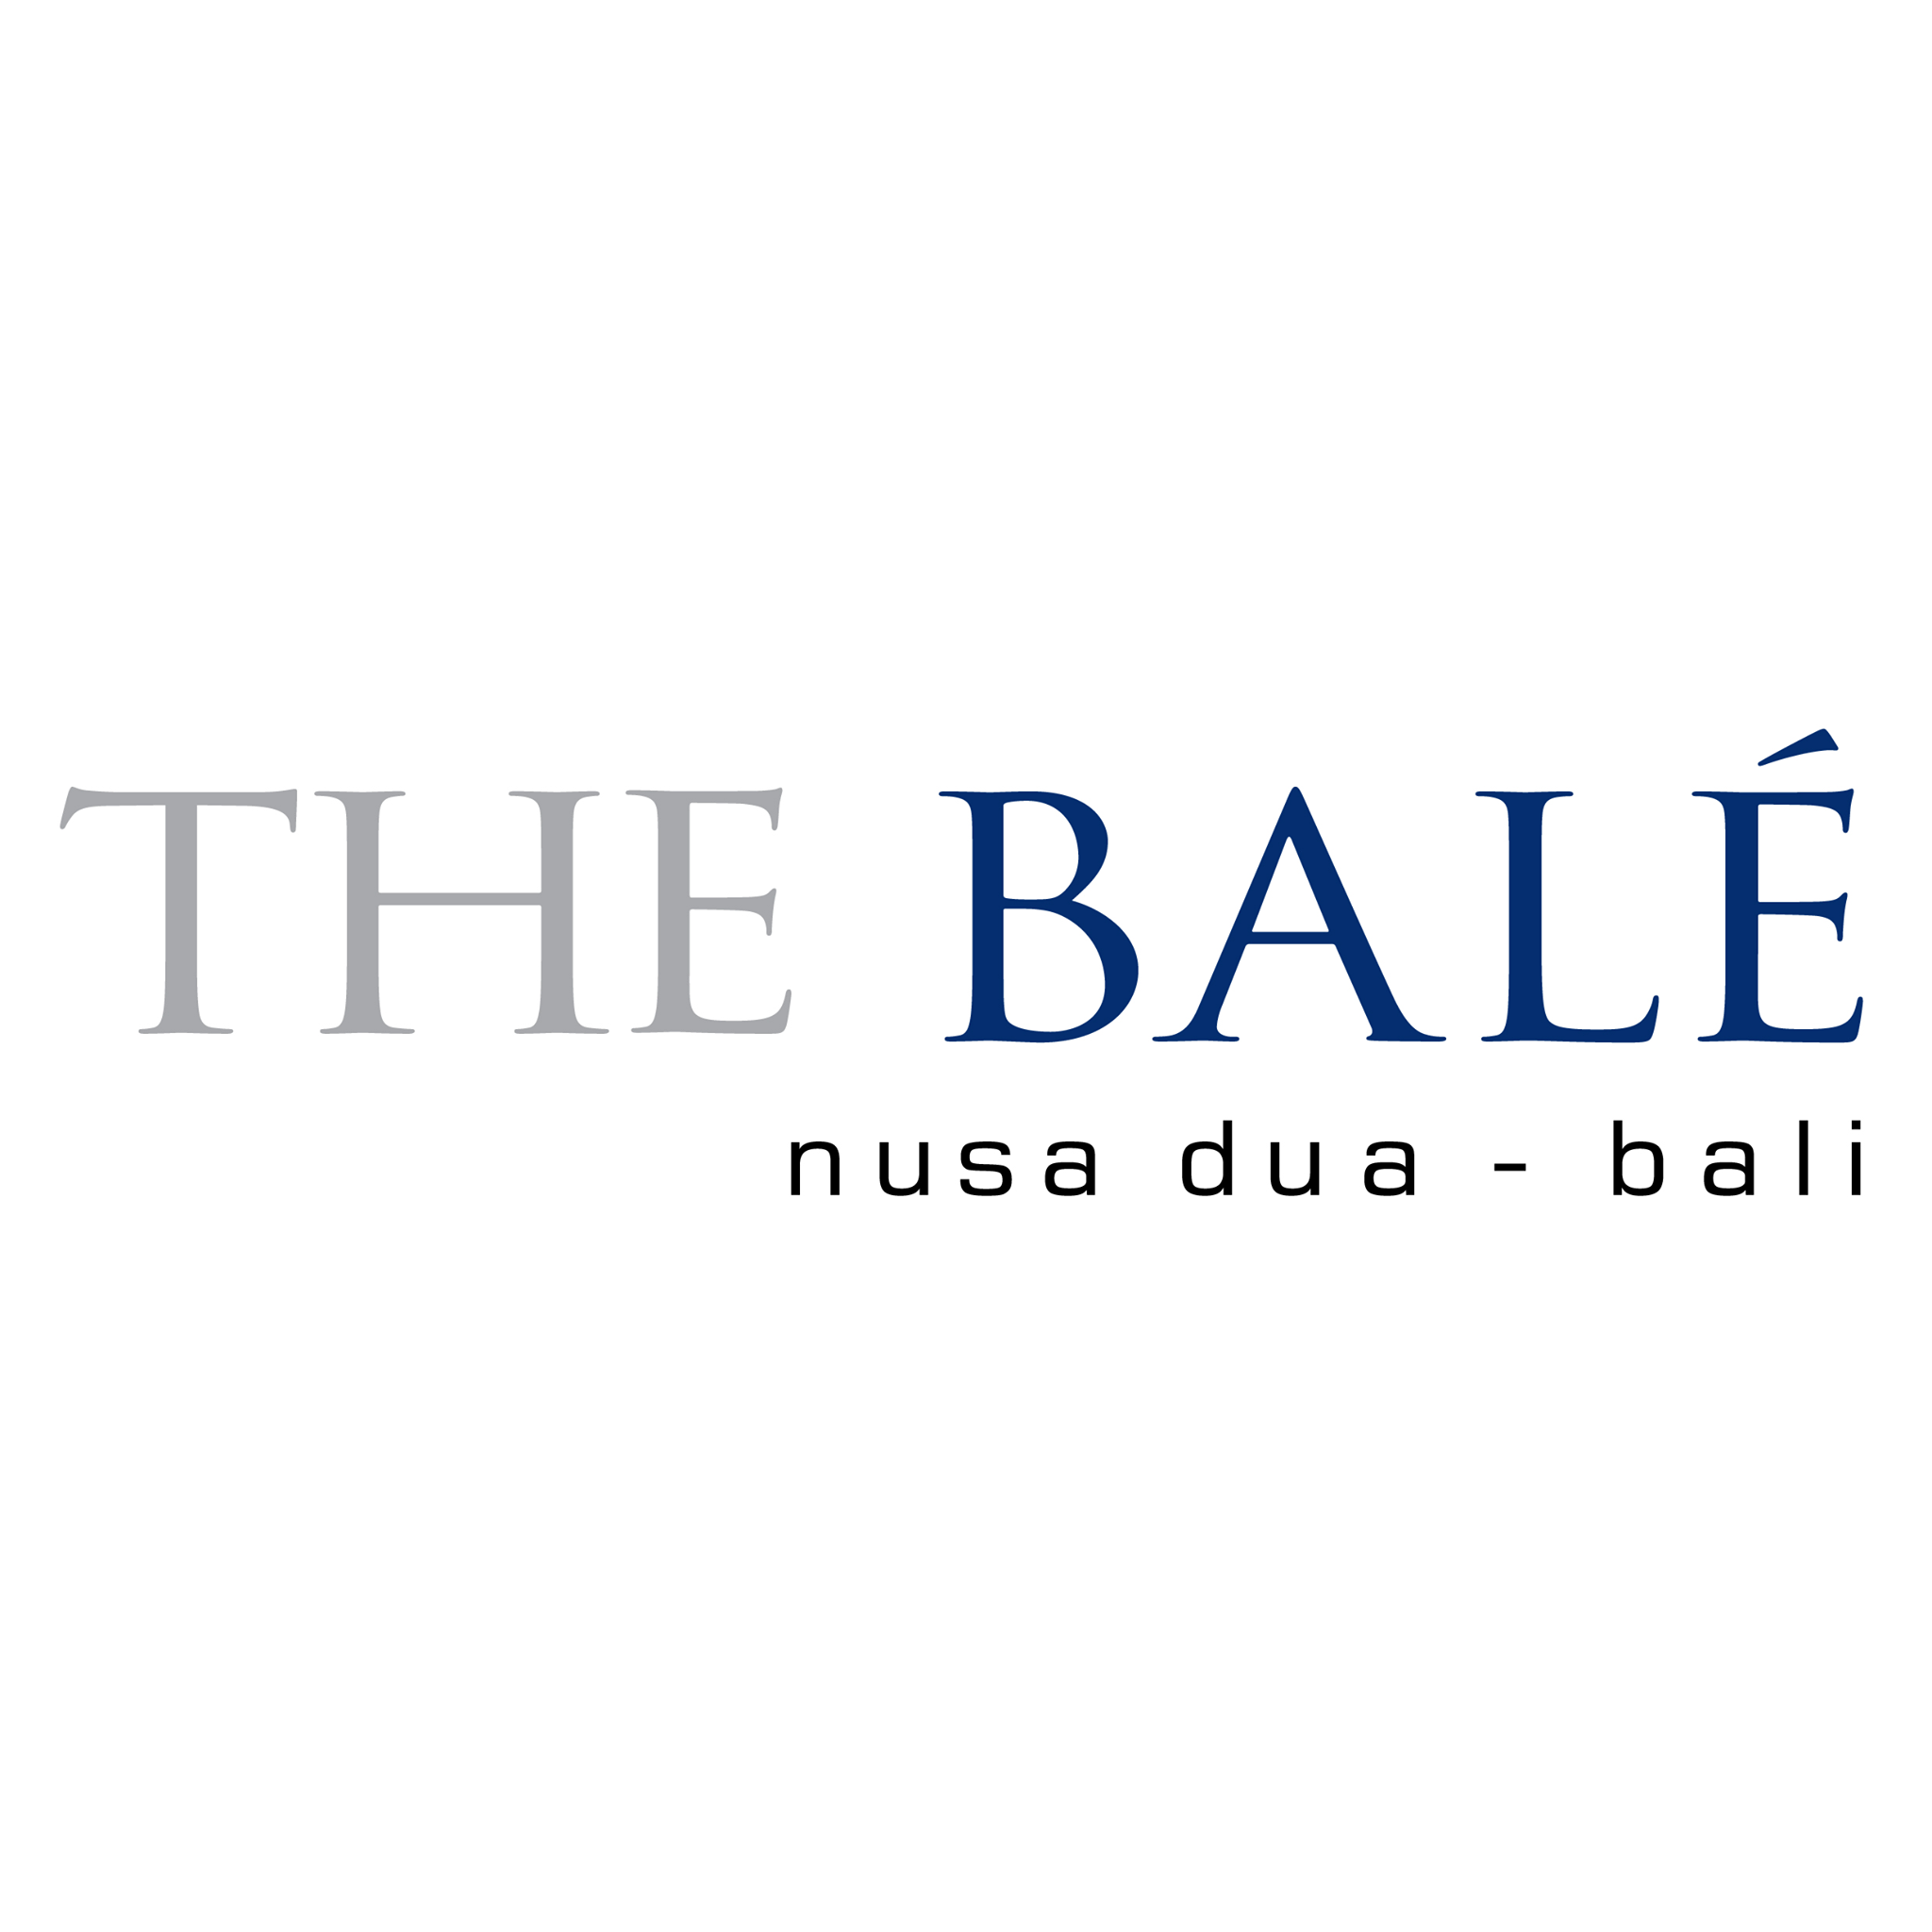 Bale-logo.png